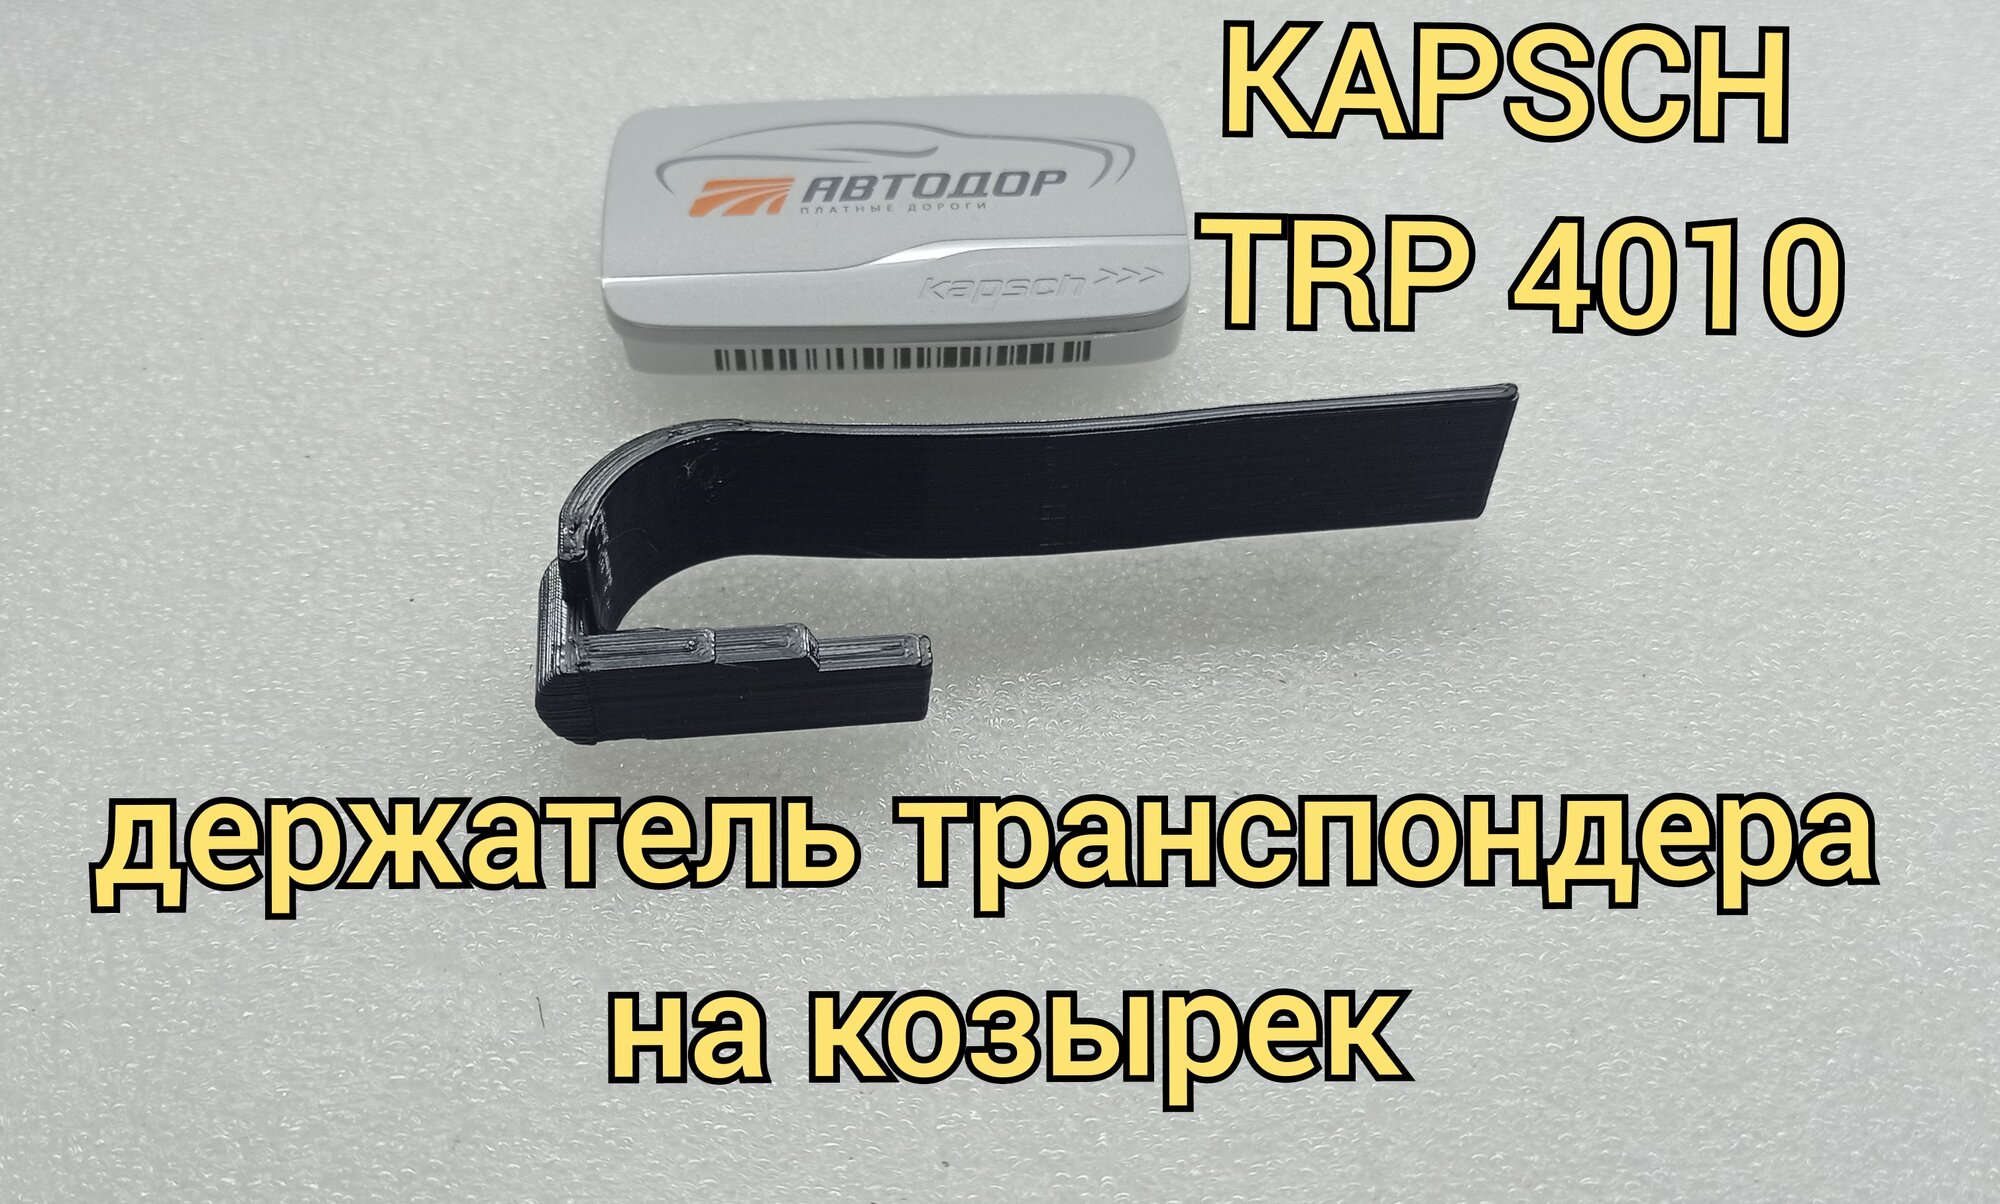 Держатель на козырёк для транспондера KAPSCH TRP 4010